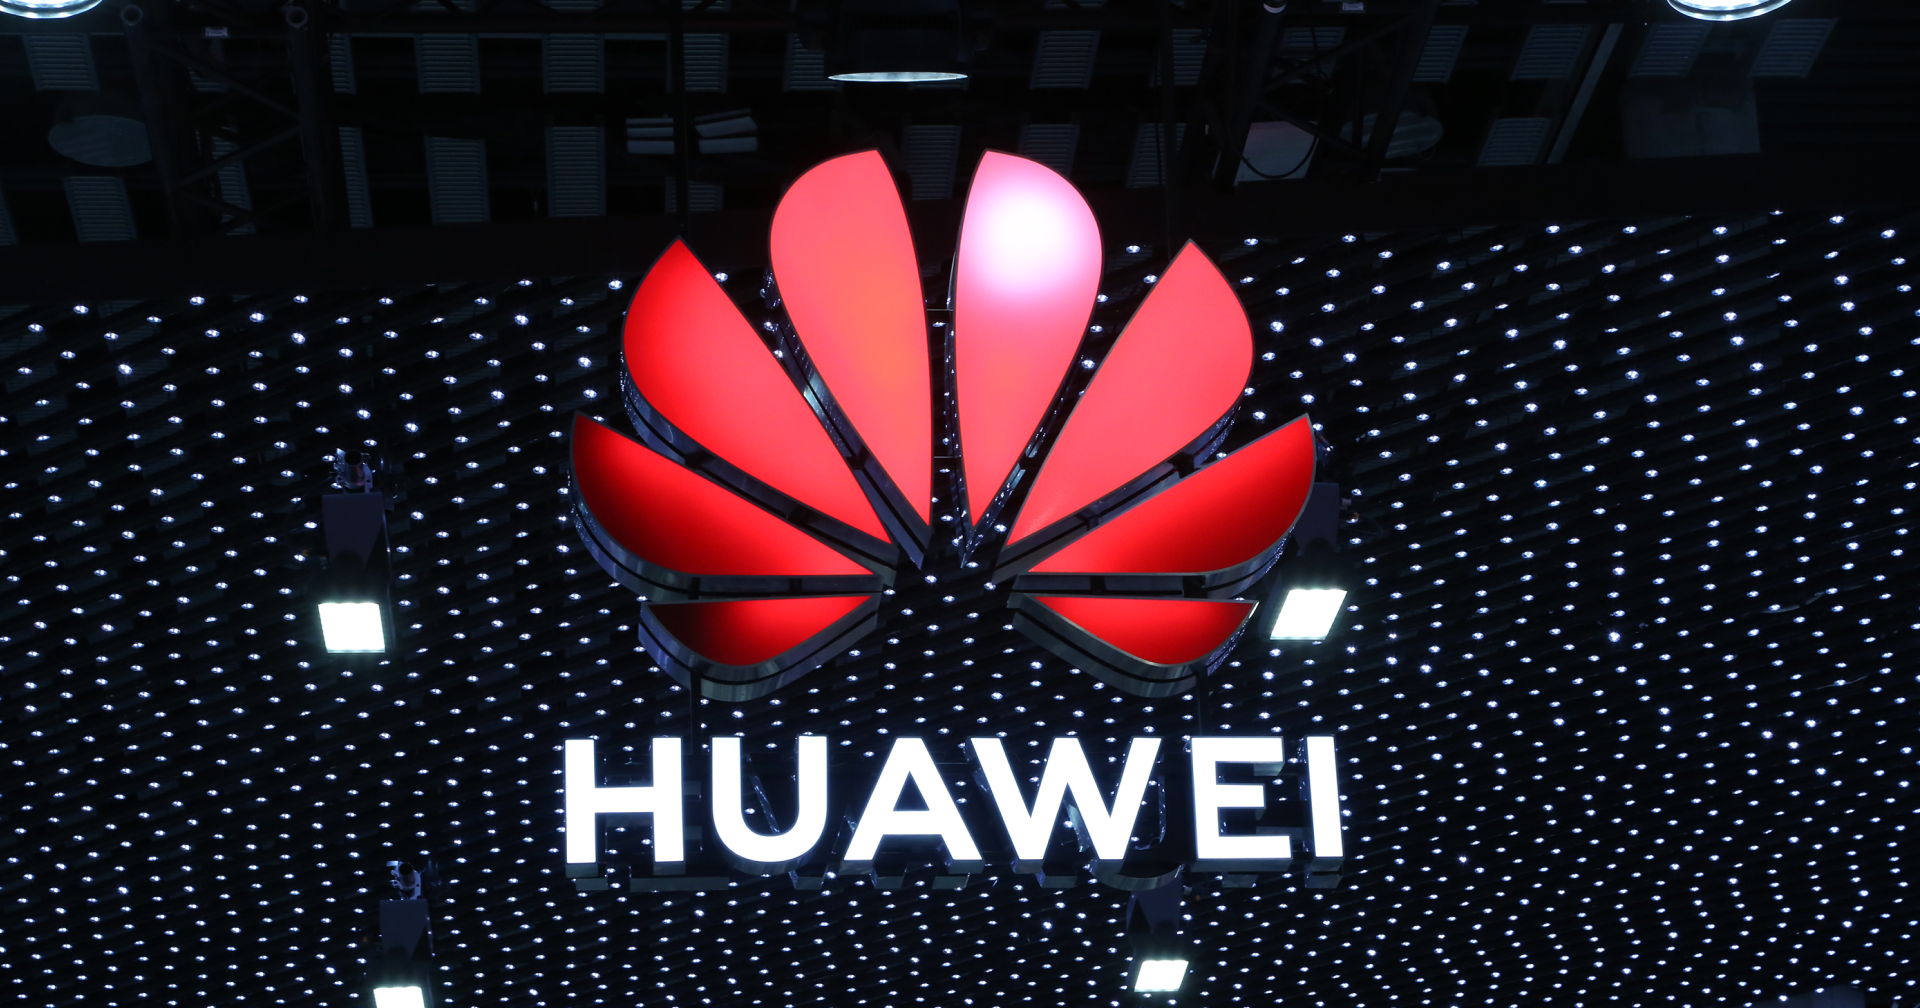 Huawei สร้างรายได้จากสิทธิบัตรกว่า 560 ล้านเหรียญ